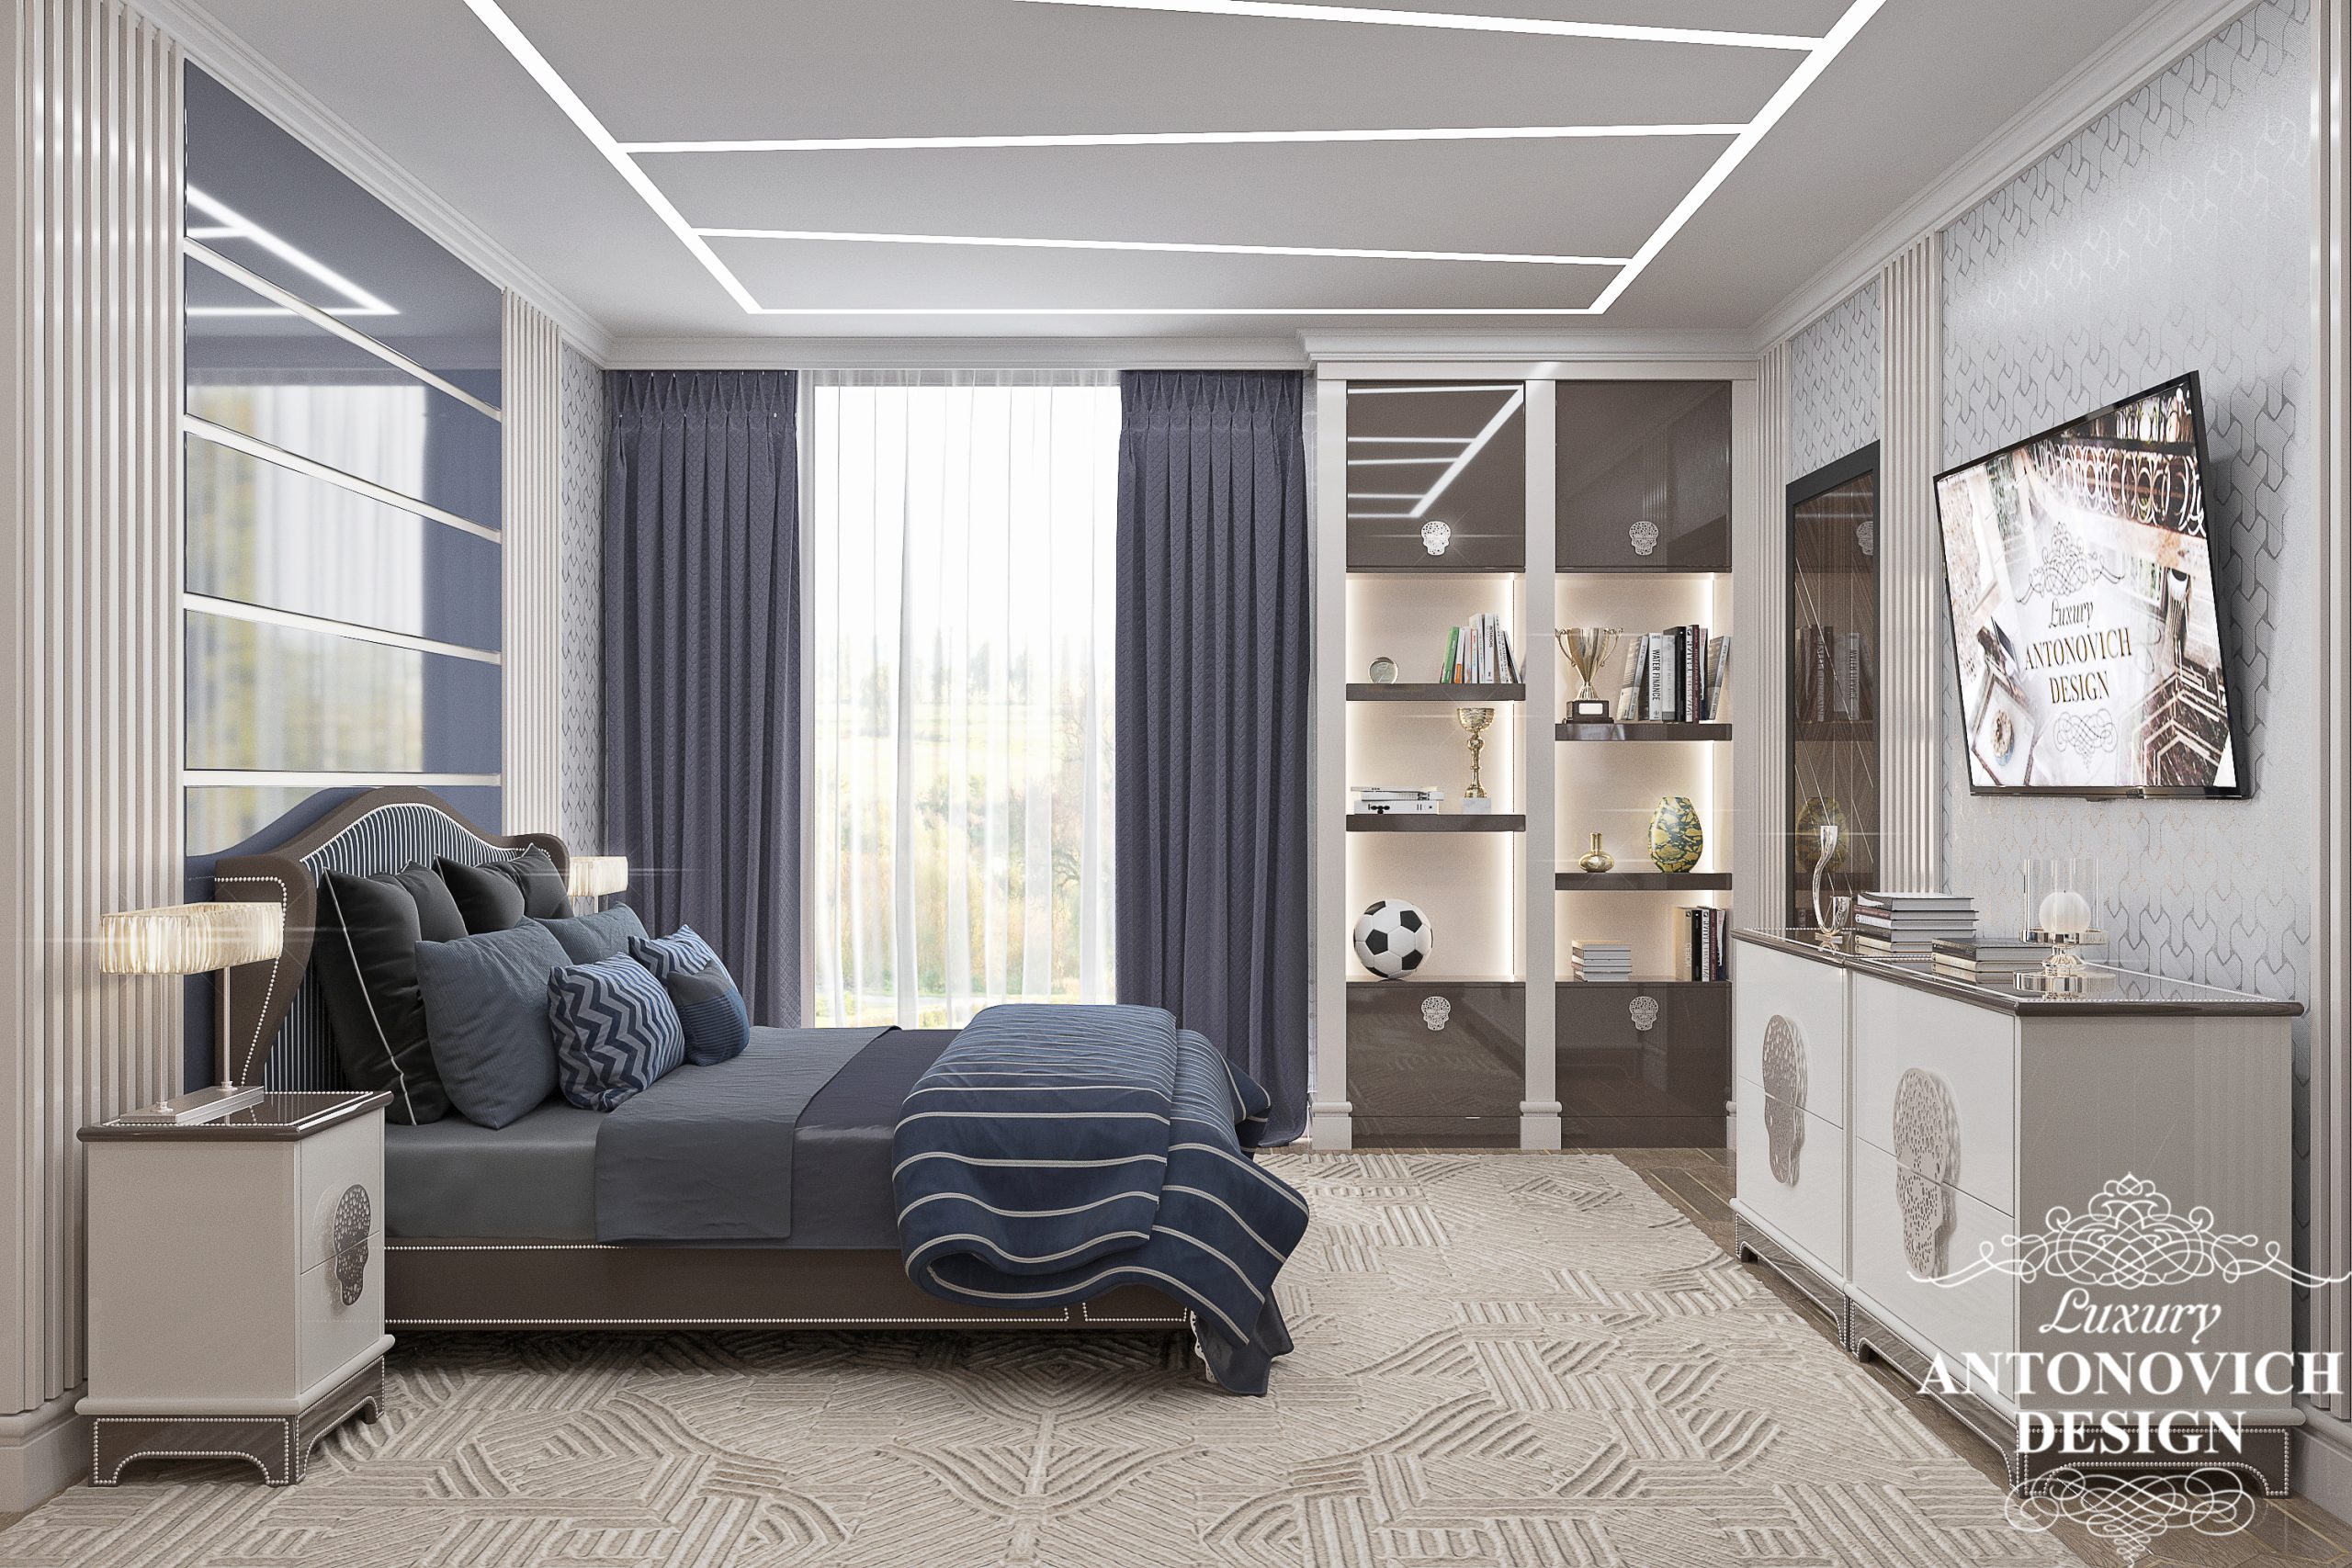 Синий цвет в интерьере в дизайне просторной спальни